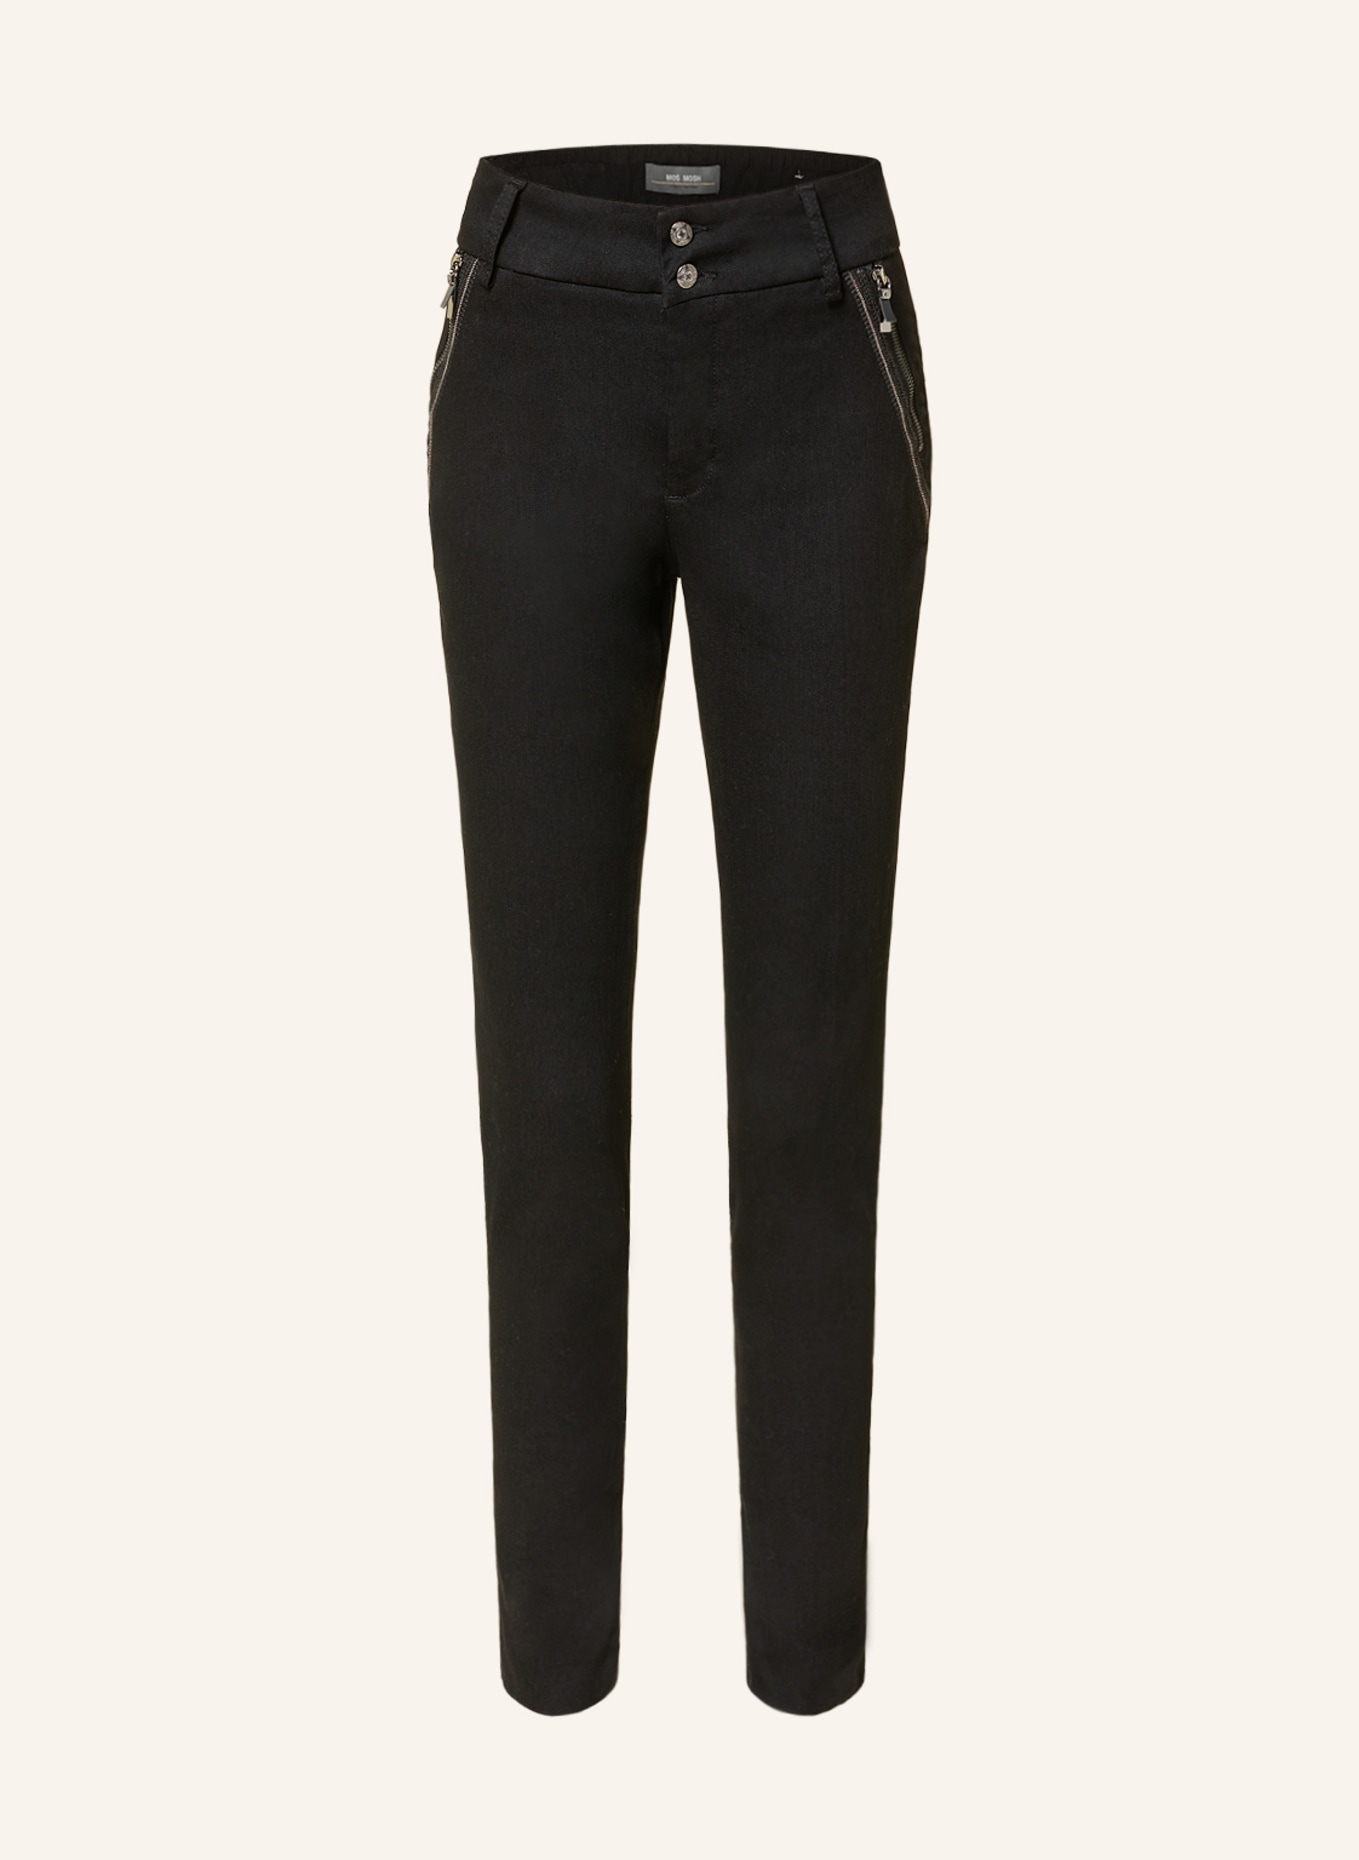 MOS MOSH Skinny Jeans MILTON NERO mit Schmucksteinen, Farbe: 801 BLACK (Bild 1)